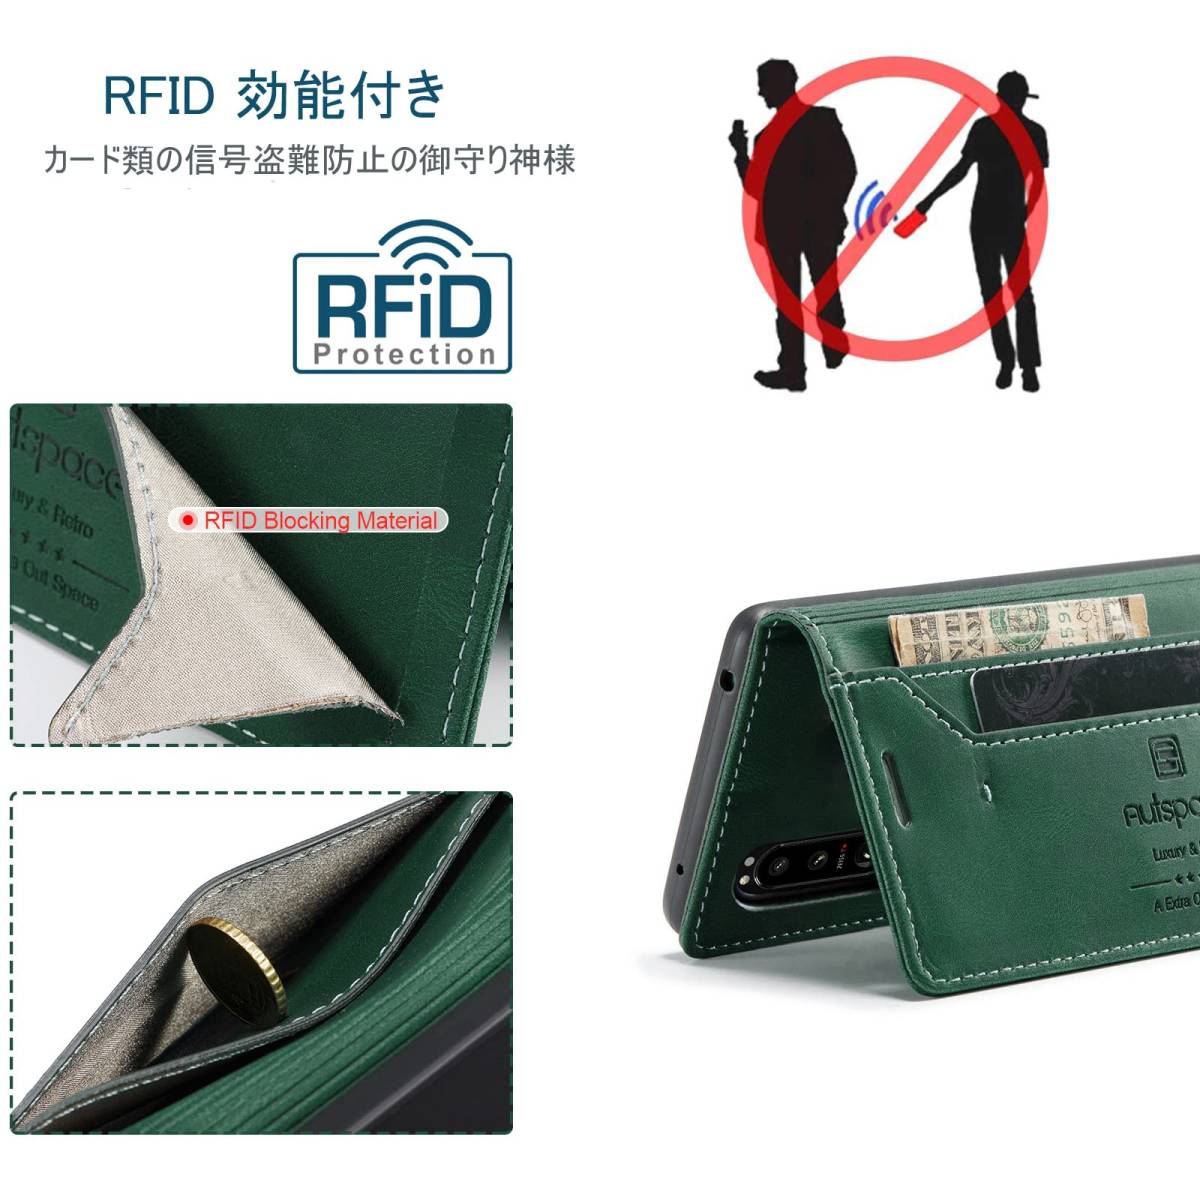 【在庫処分】ストラップホール付き 薄型 スタンド機能 マグネット式 スキミング防止 磁気防止 (Xperia RFID sog07_画像5